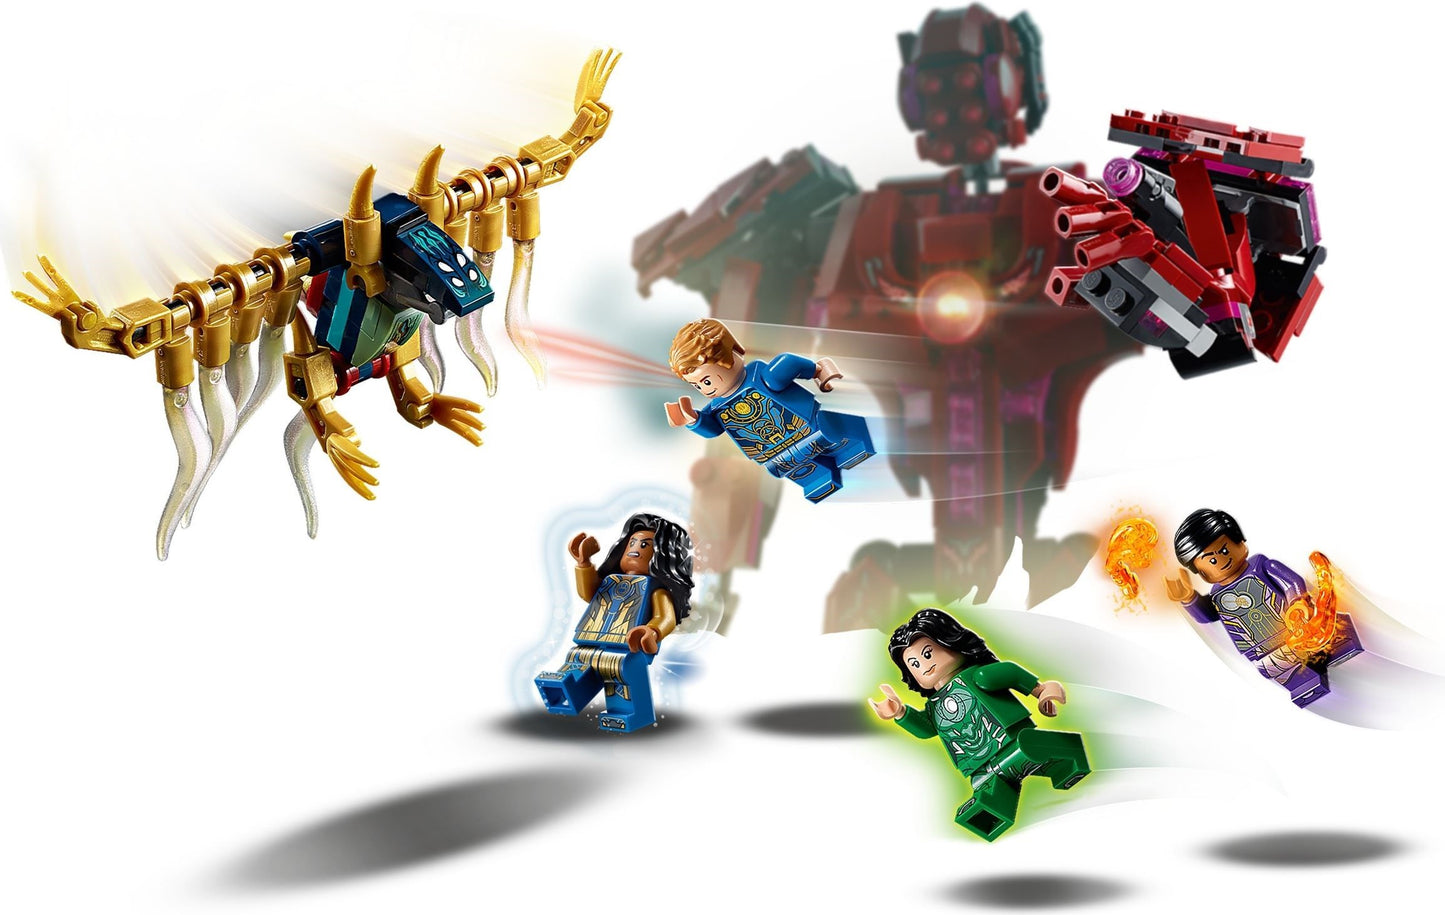 LEGO Super Heroes – Eternii in umbra lui Arishem 76155, 493 piese